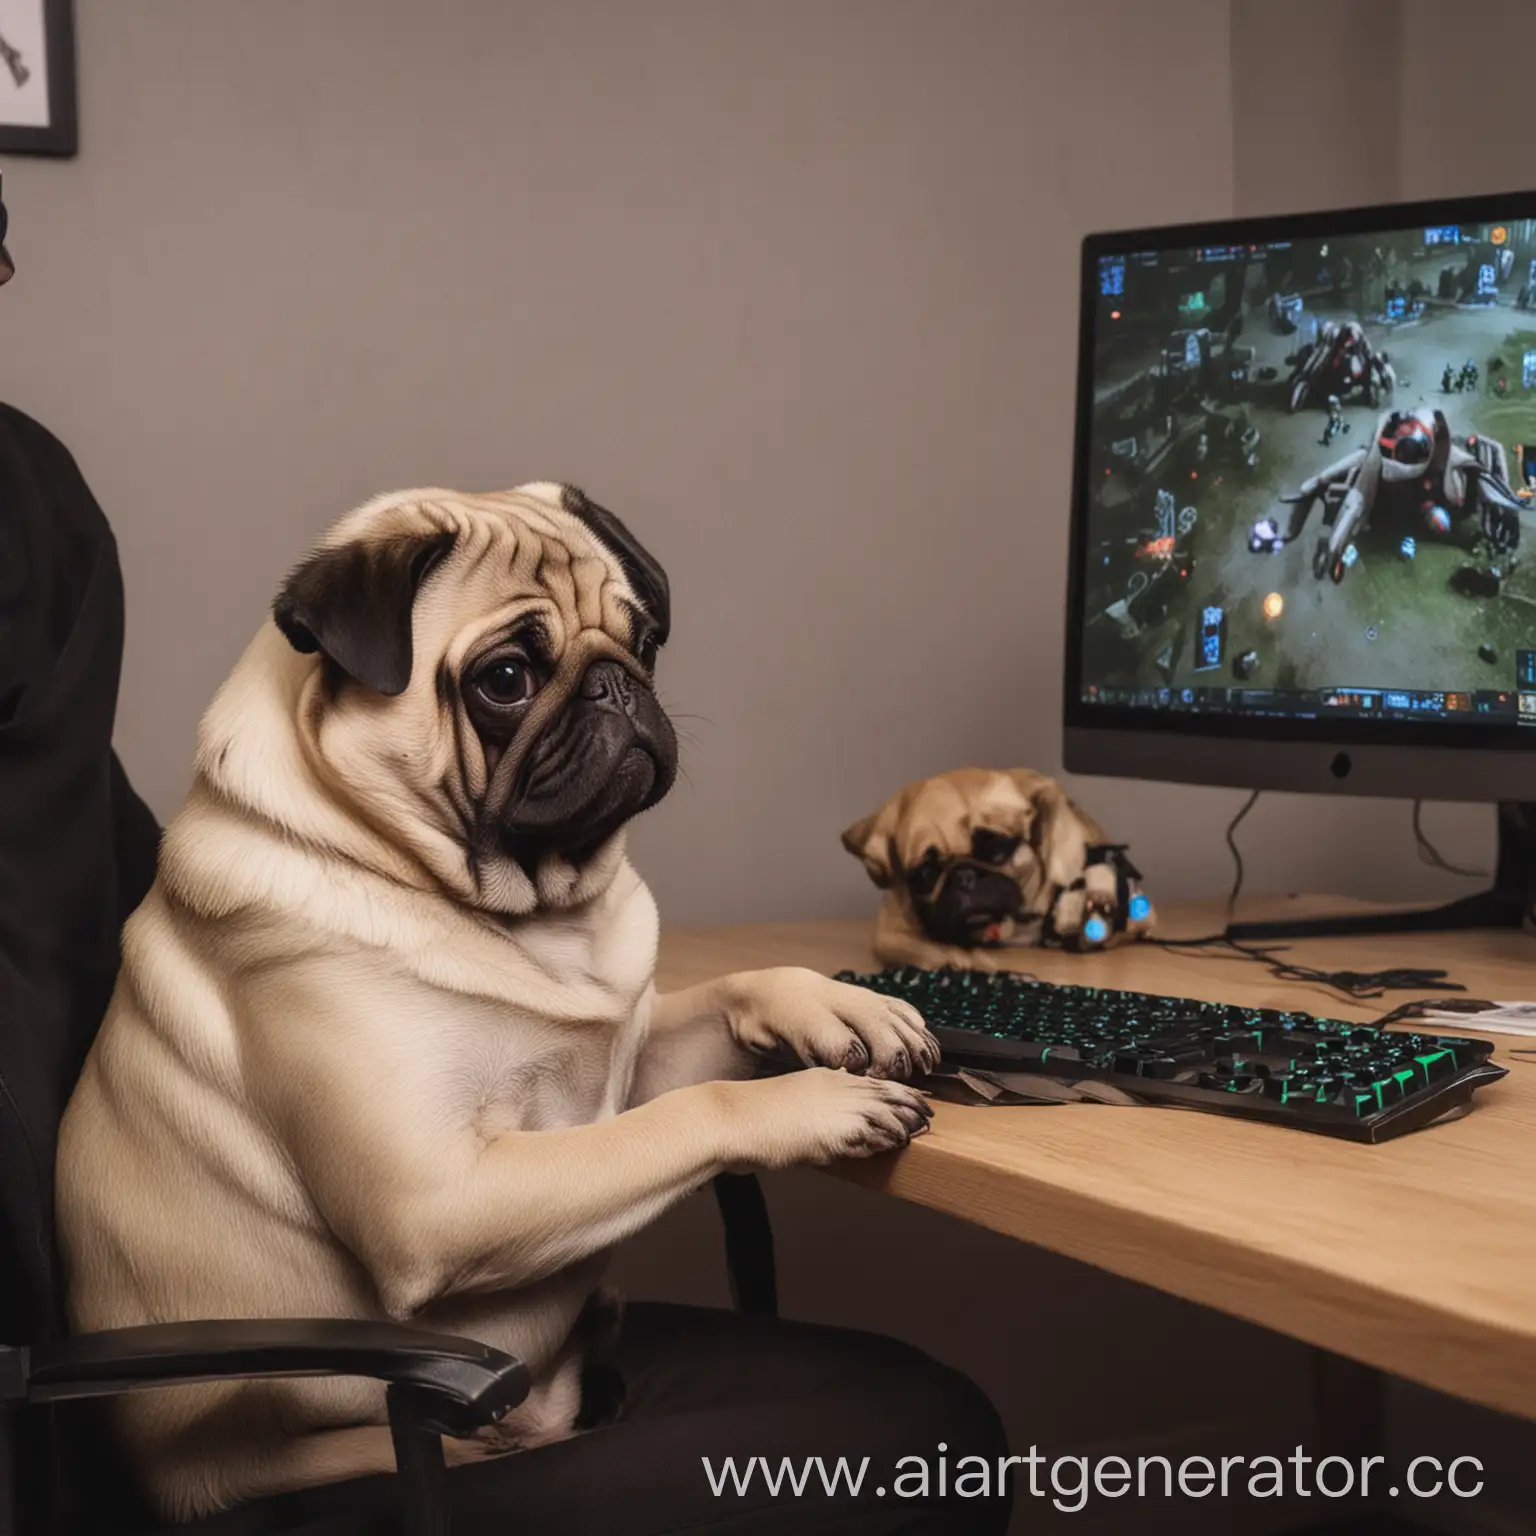 Gamer-Petting-Pug-Dog-While-Gaming